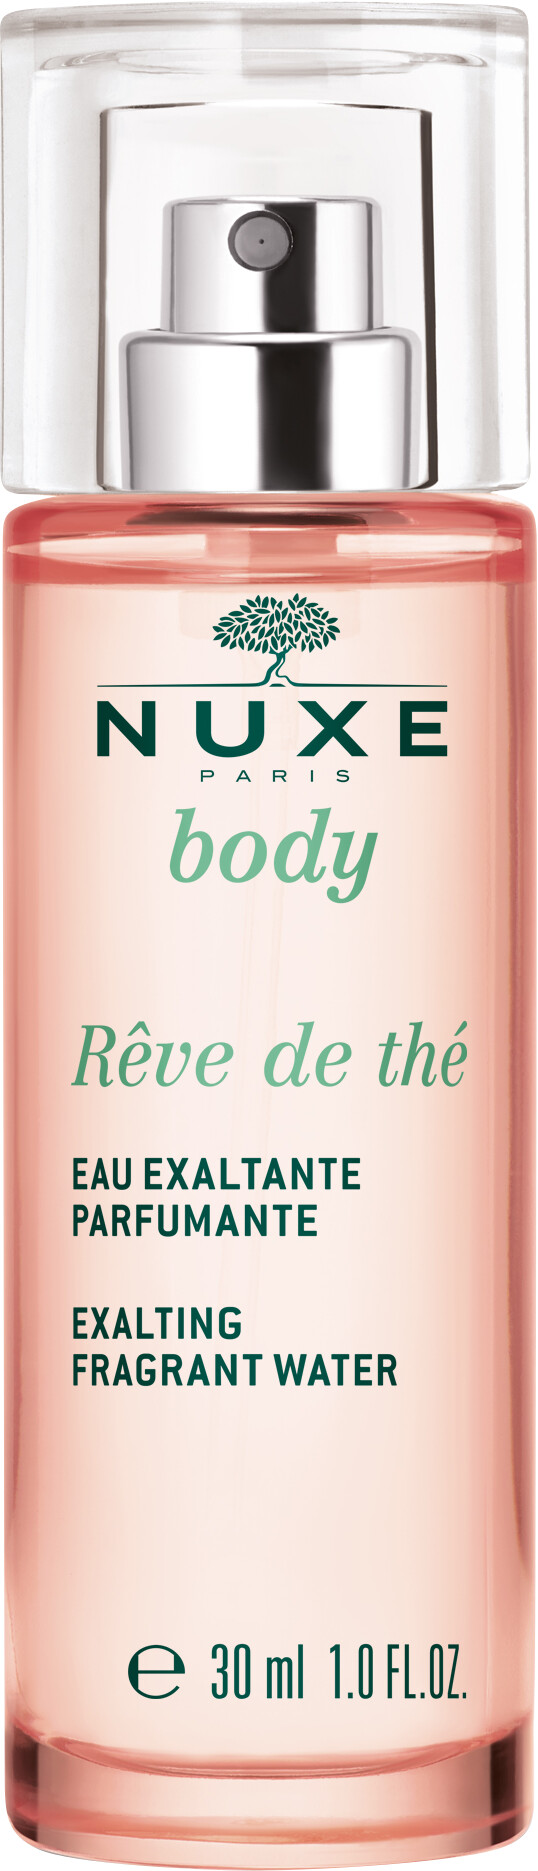 Nuxe Body Reve de the Exalting Fragrant Water 30ml